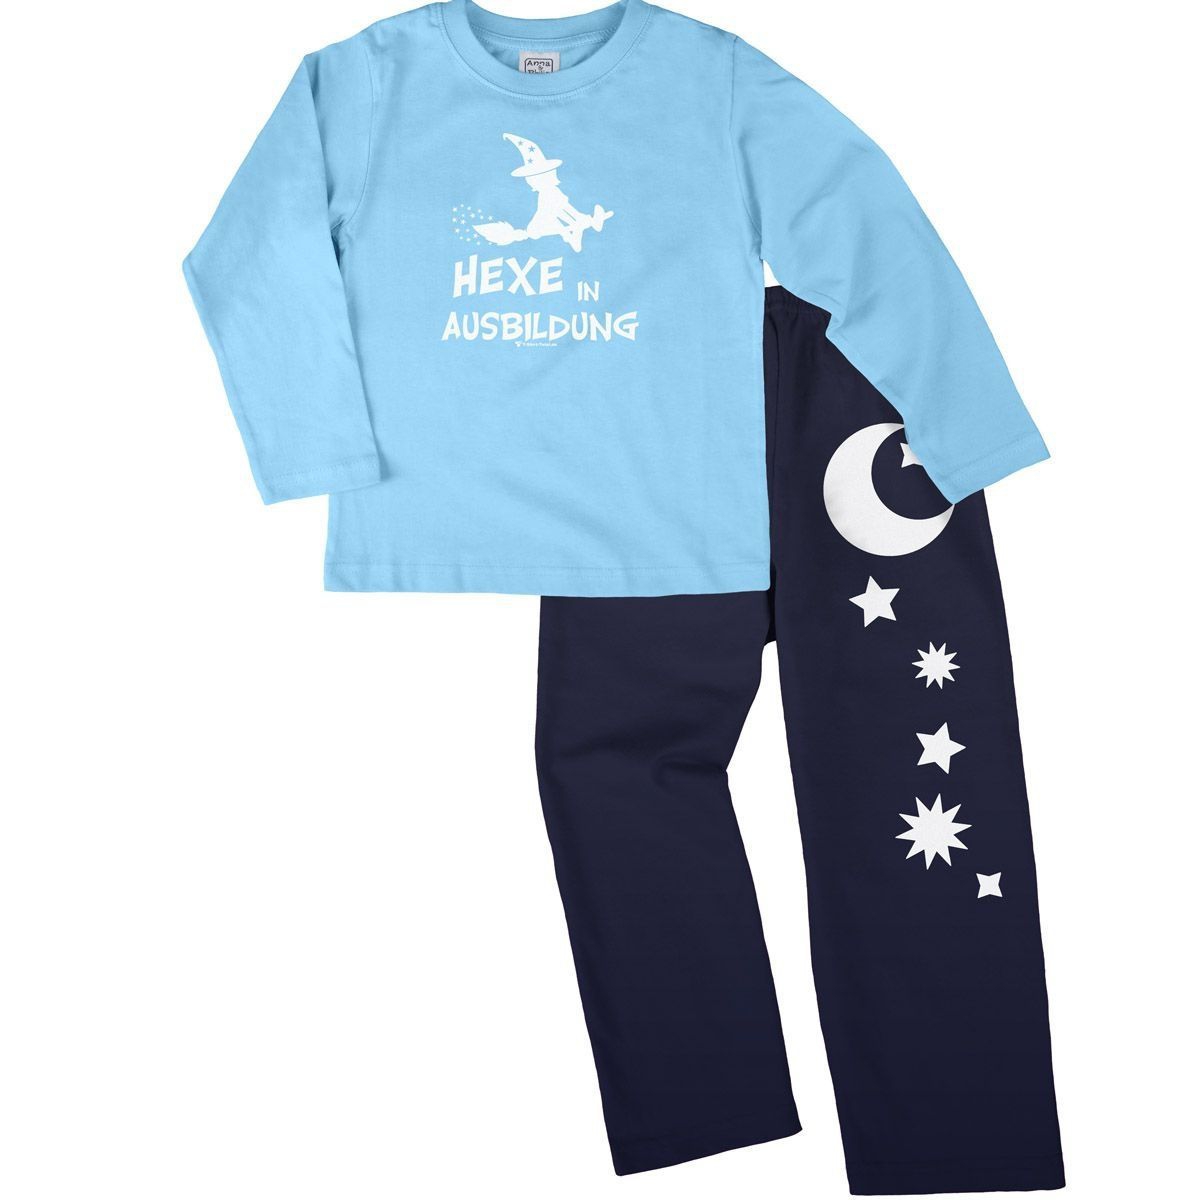 Hexe in Ausbildung Pyjama Set hellblau / navy 110 / 116